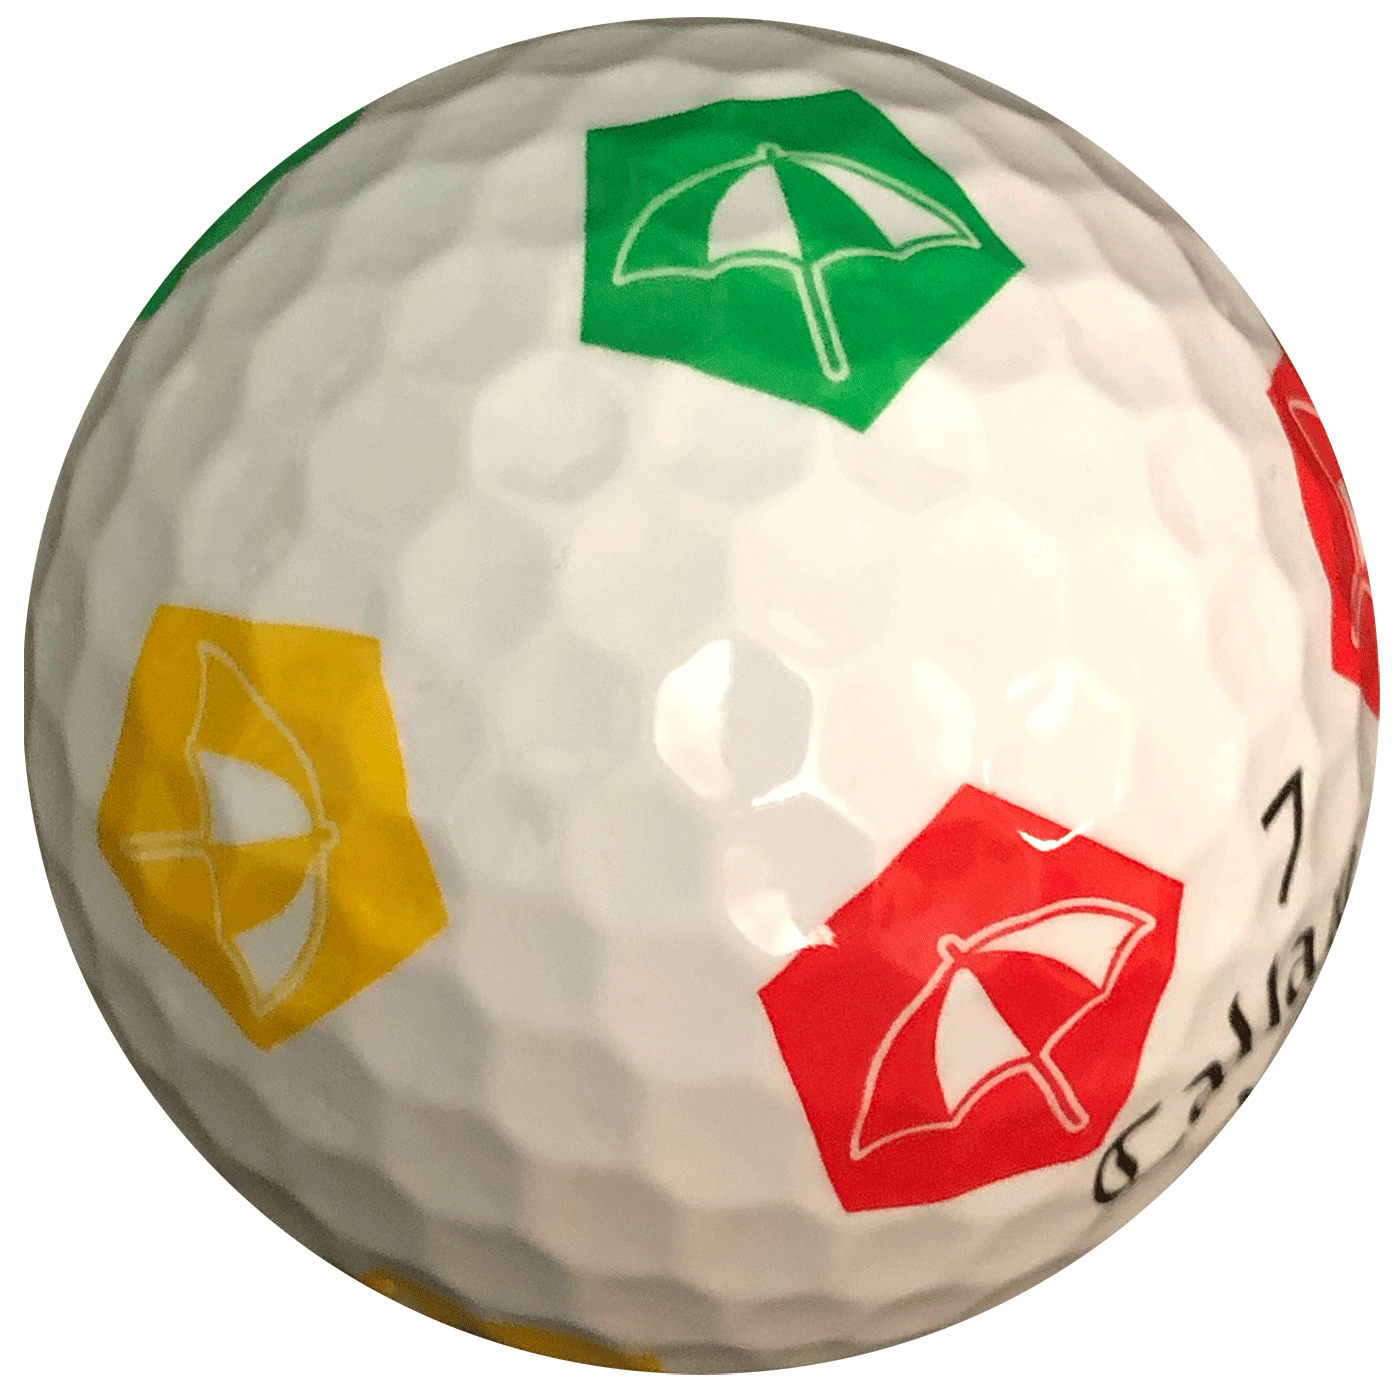 Bay Hill ‹ Truvis Golf Balls